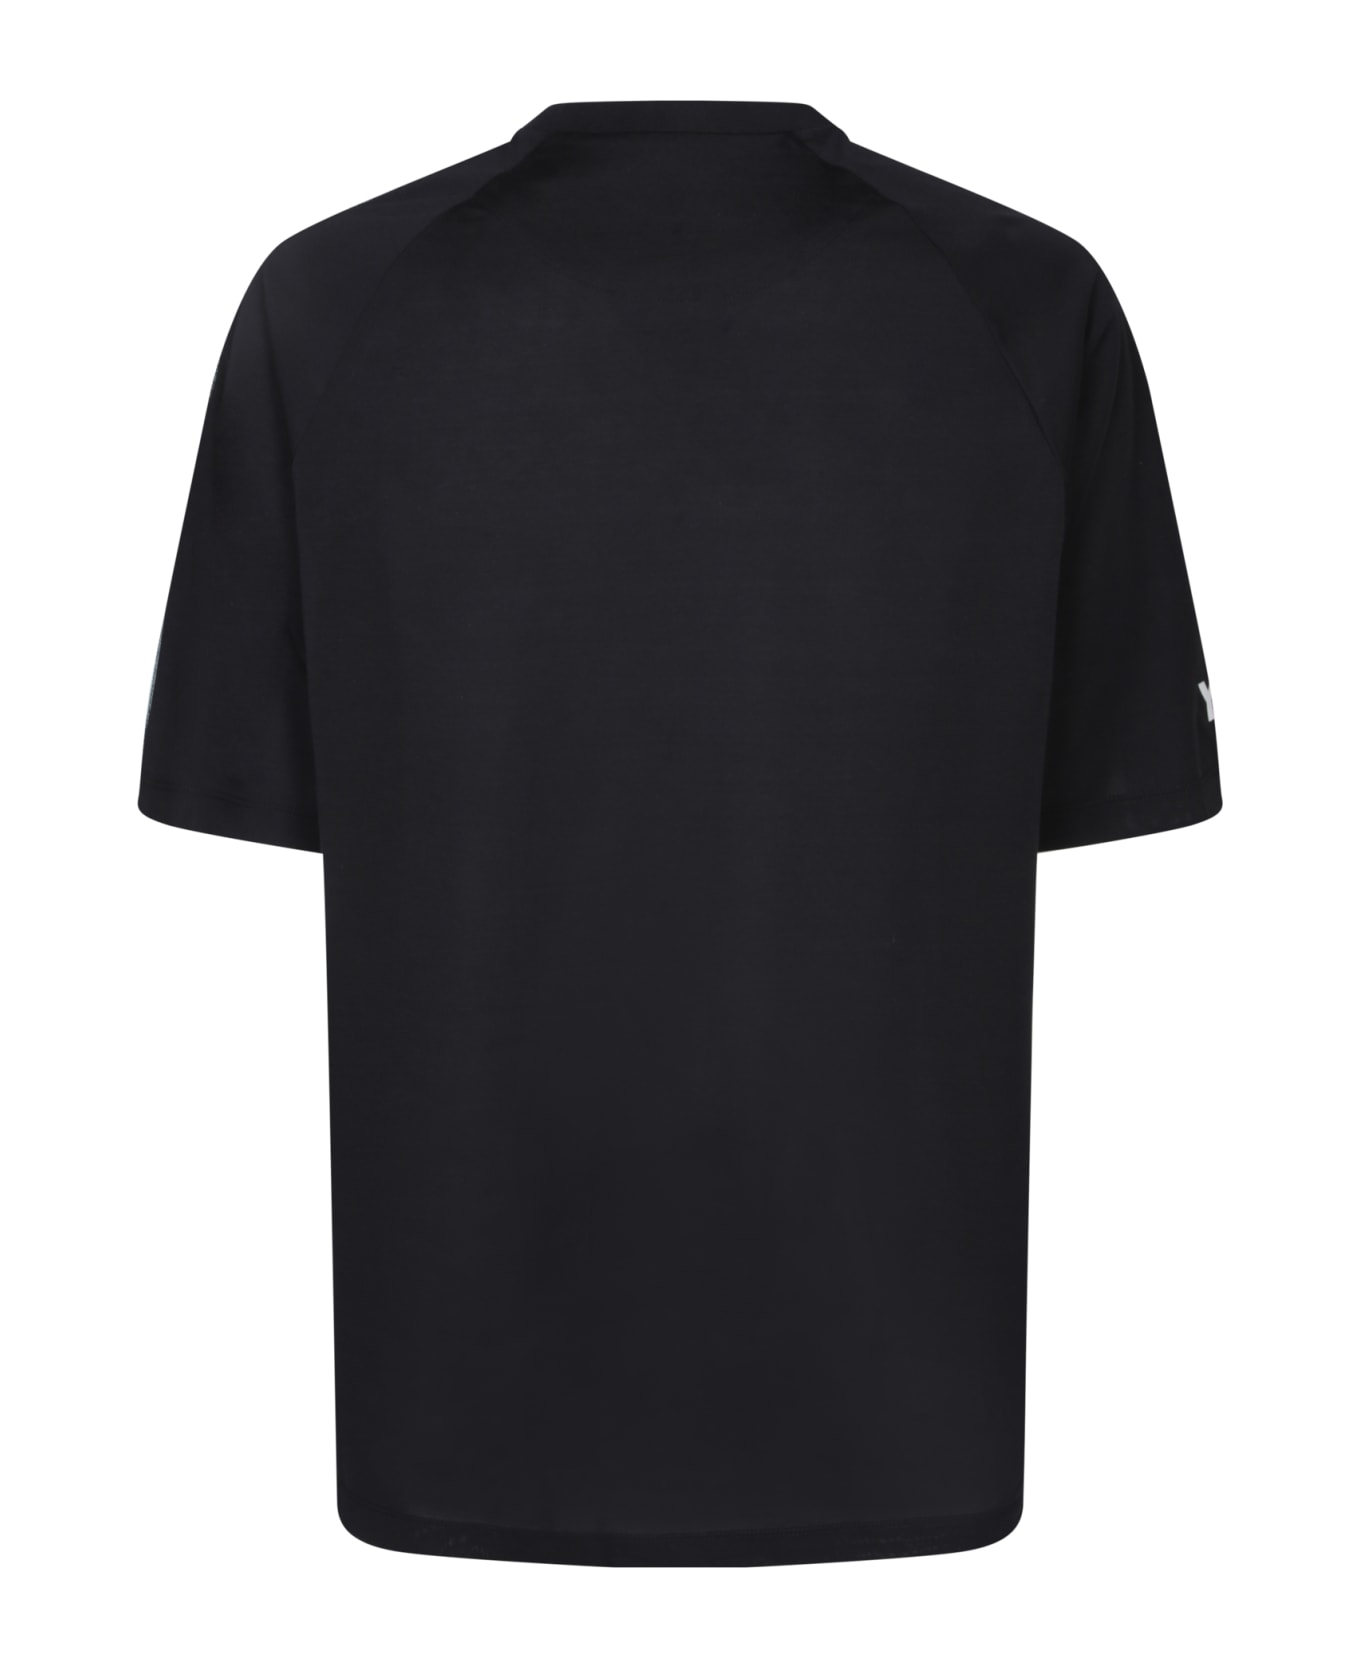 Y-3 Adidas Y-3 3s Black T-shirt - Black シャツ